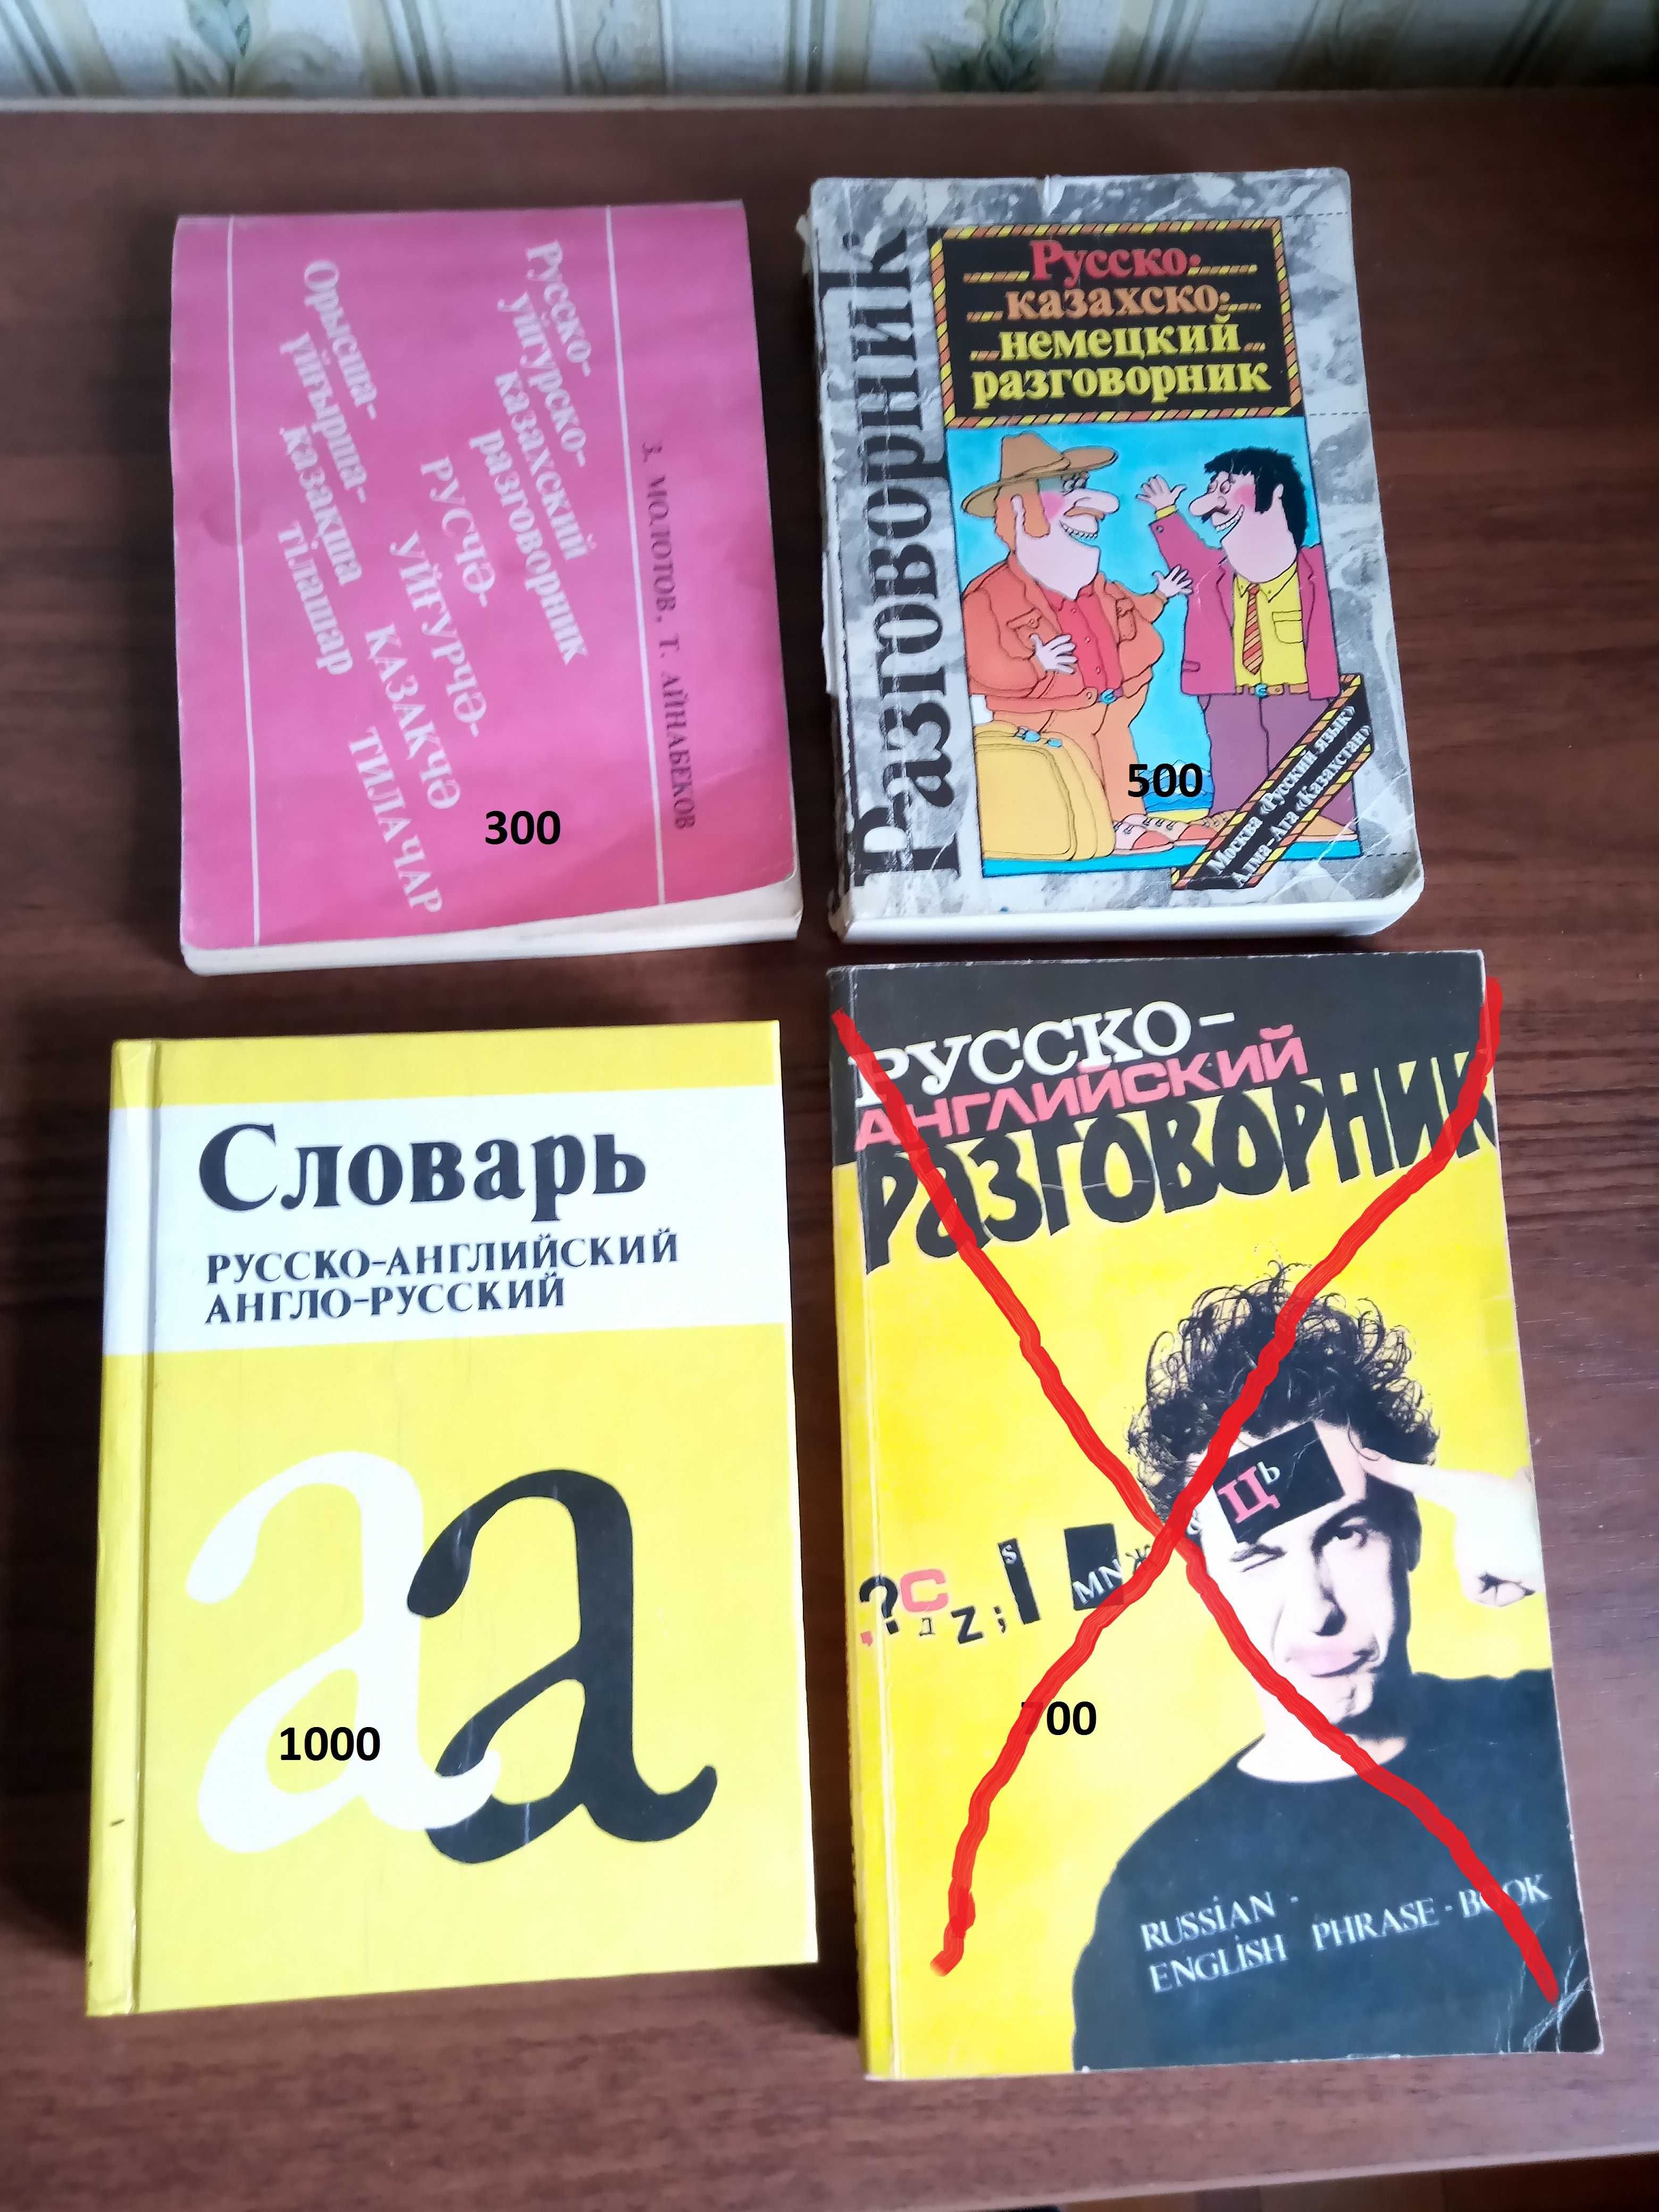 Словари и учебники  по английскому, казахскому и немецкому языкам.